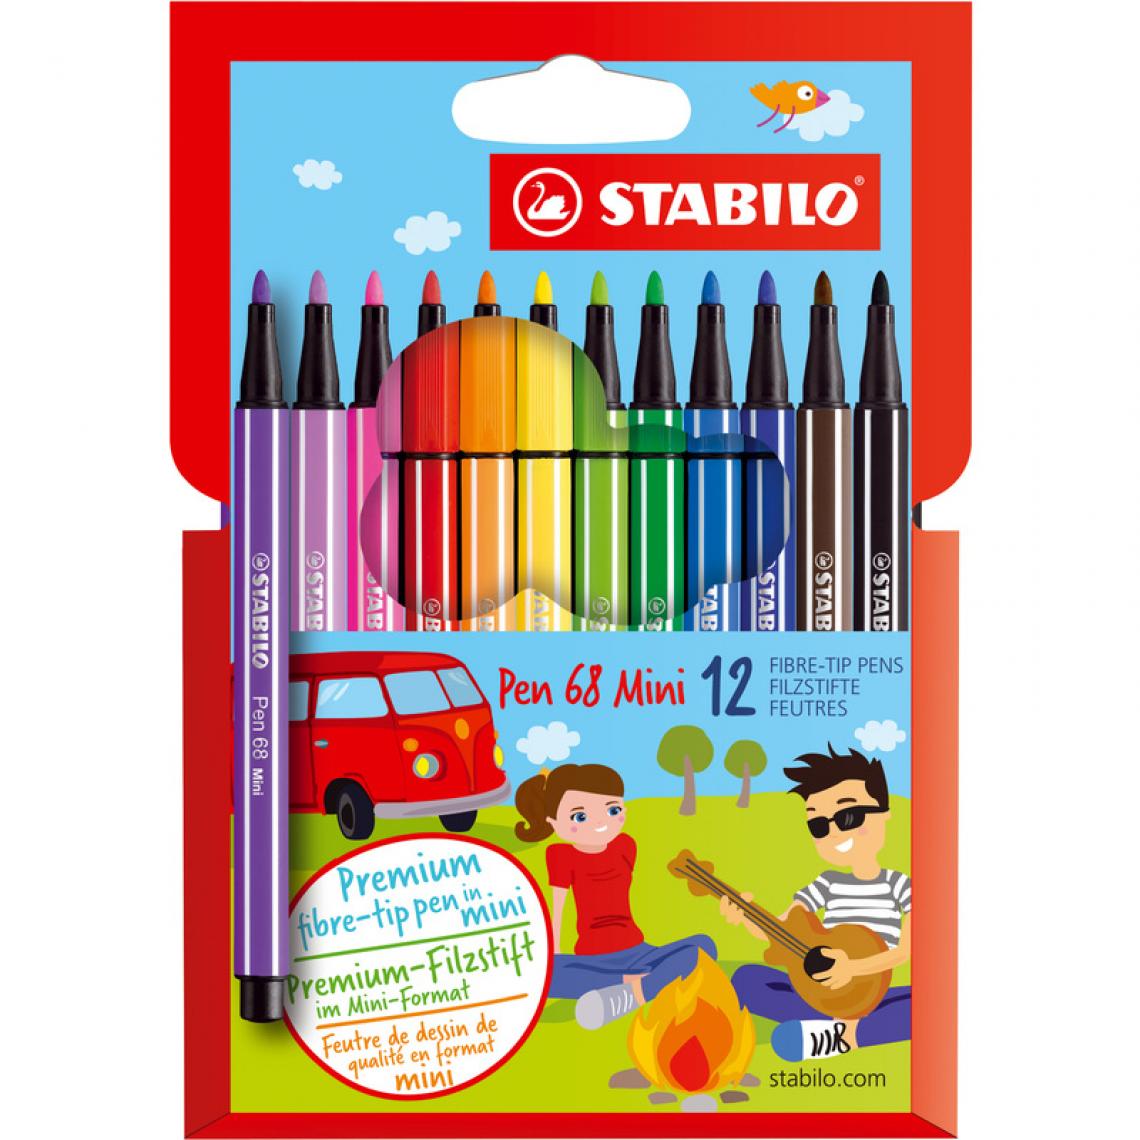 Stabilo - STABILO Feutre Pen 68 Mini, étui en carton de 12 () - Outils et accessoires du peintre